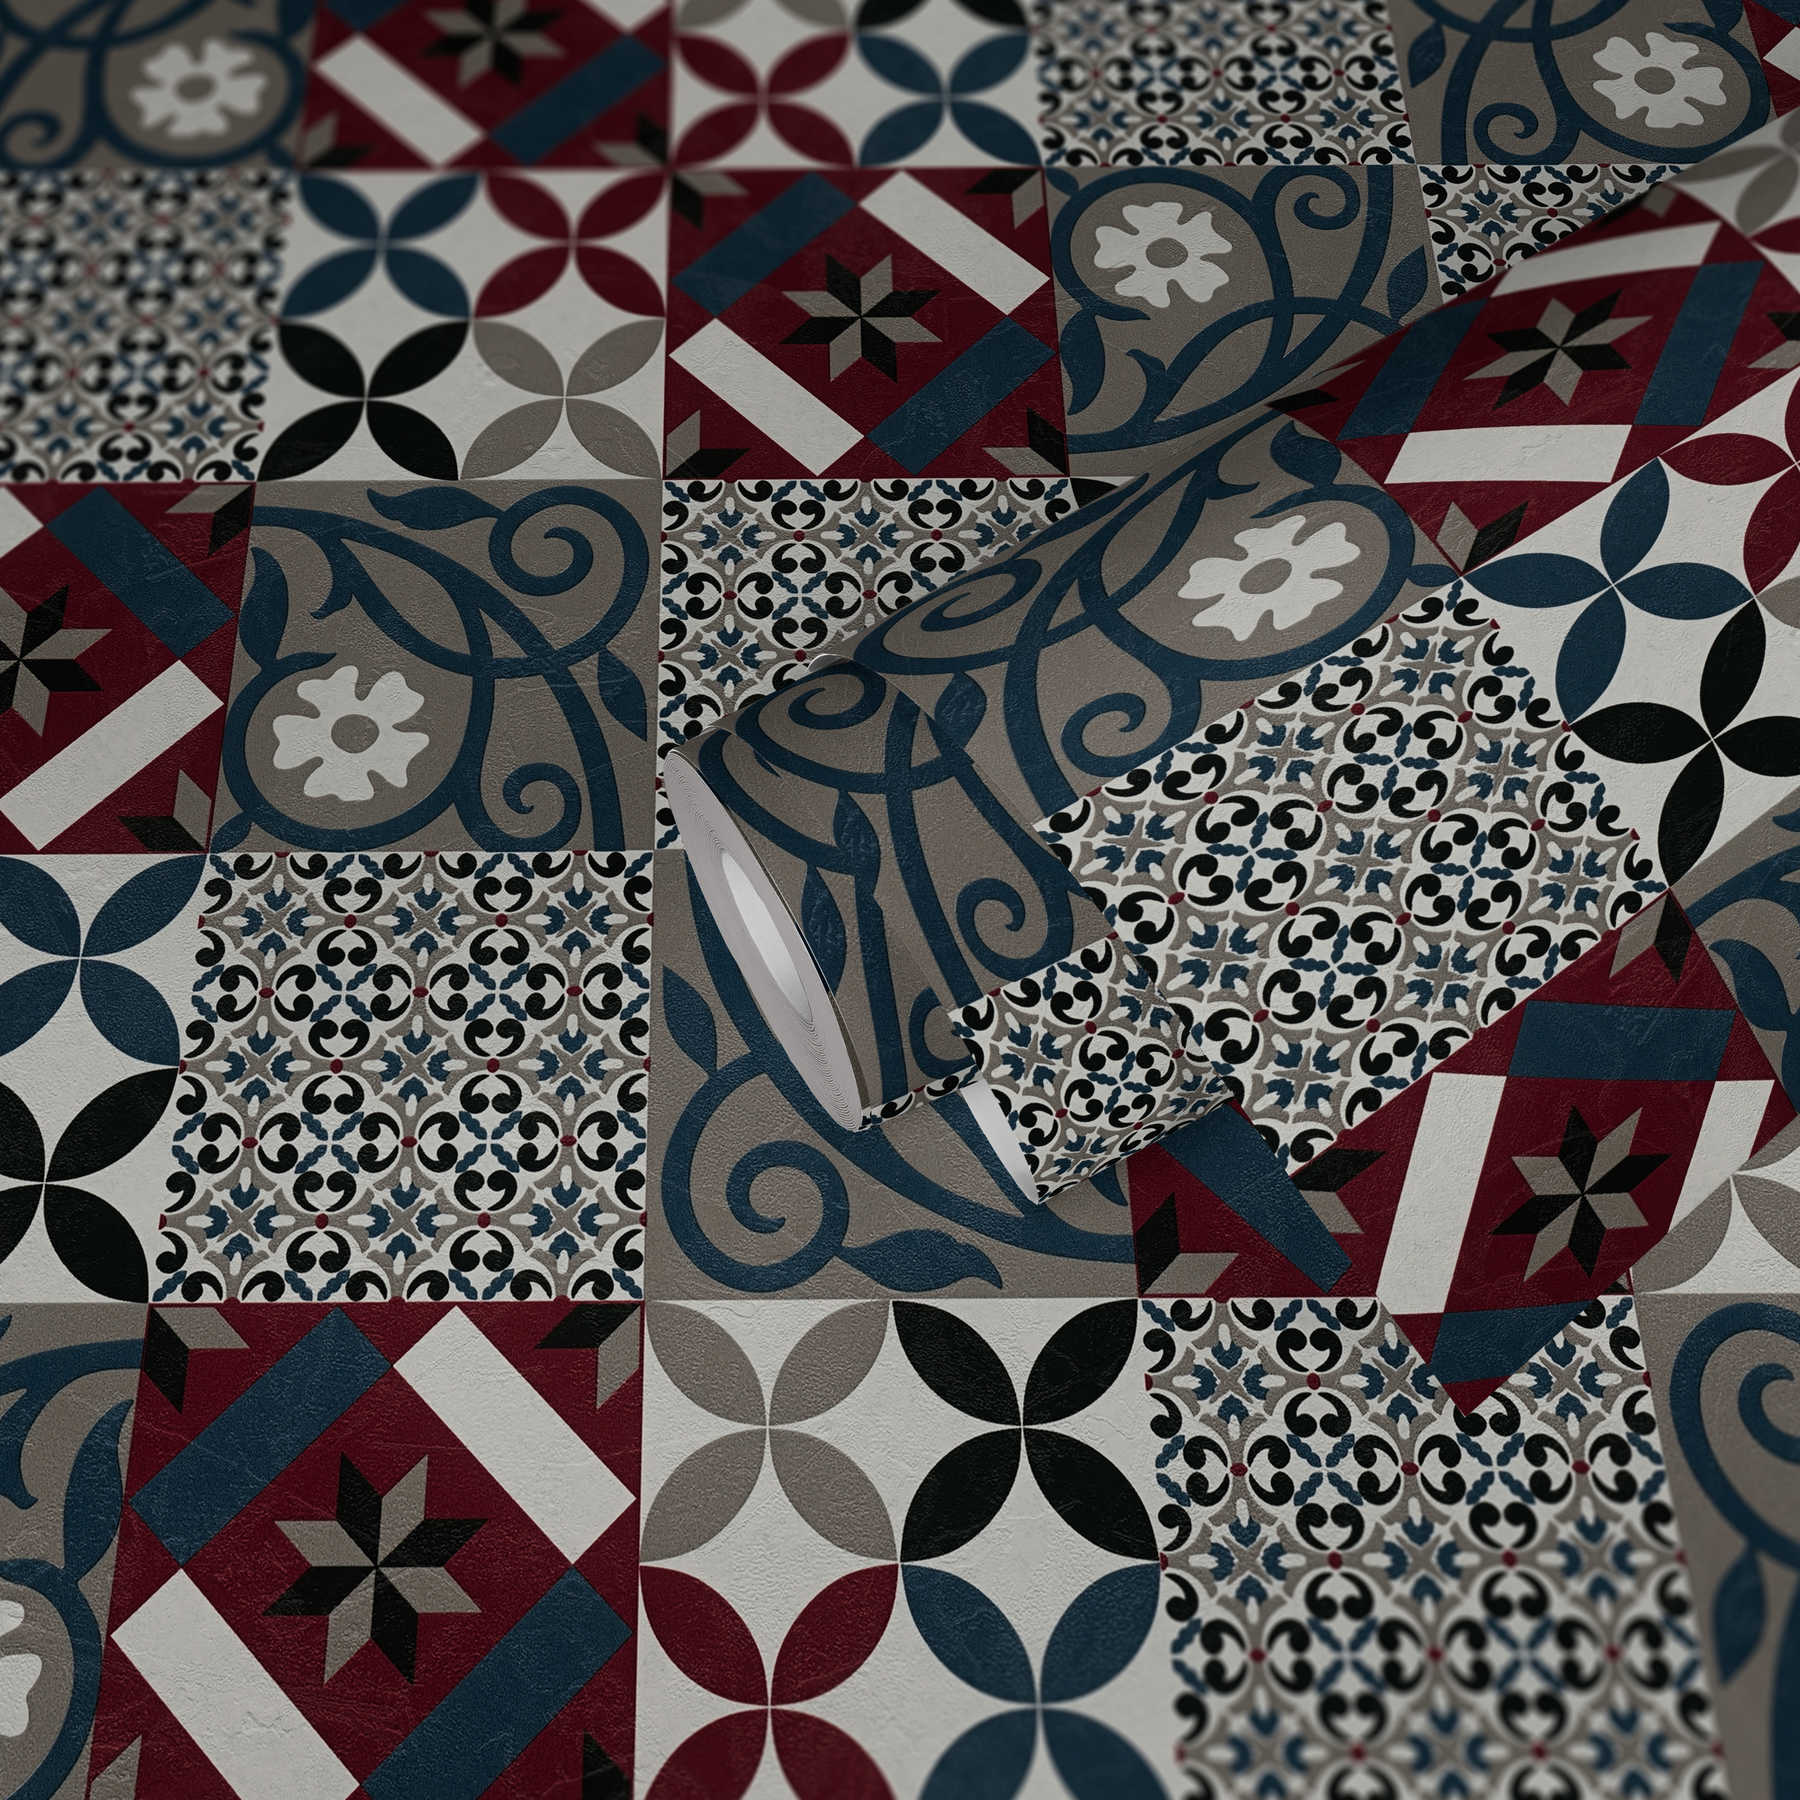             Fliesen-Tapete Mosaik & Blumenmuster – Schwarz, Rot, Blau
        